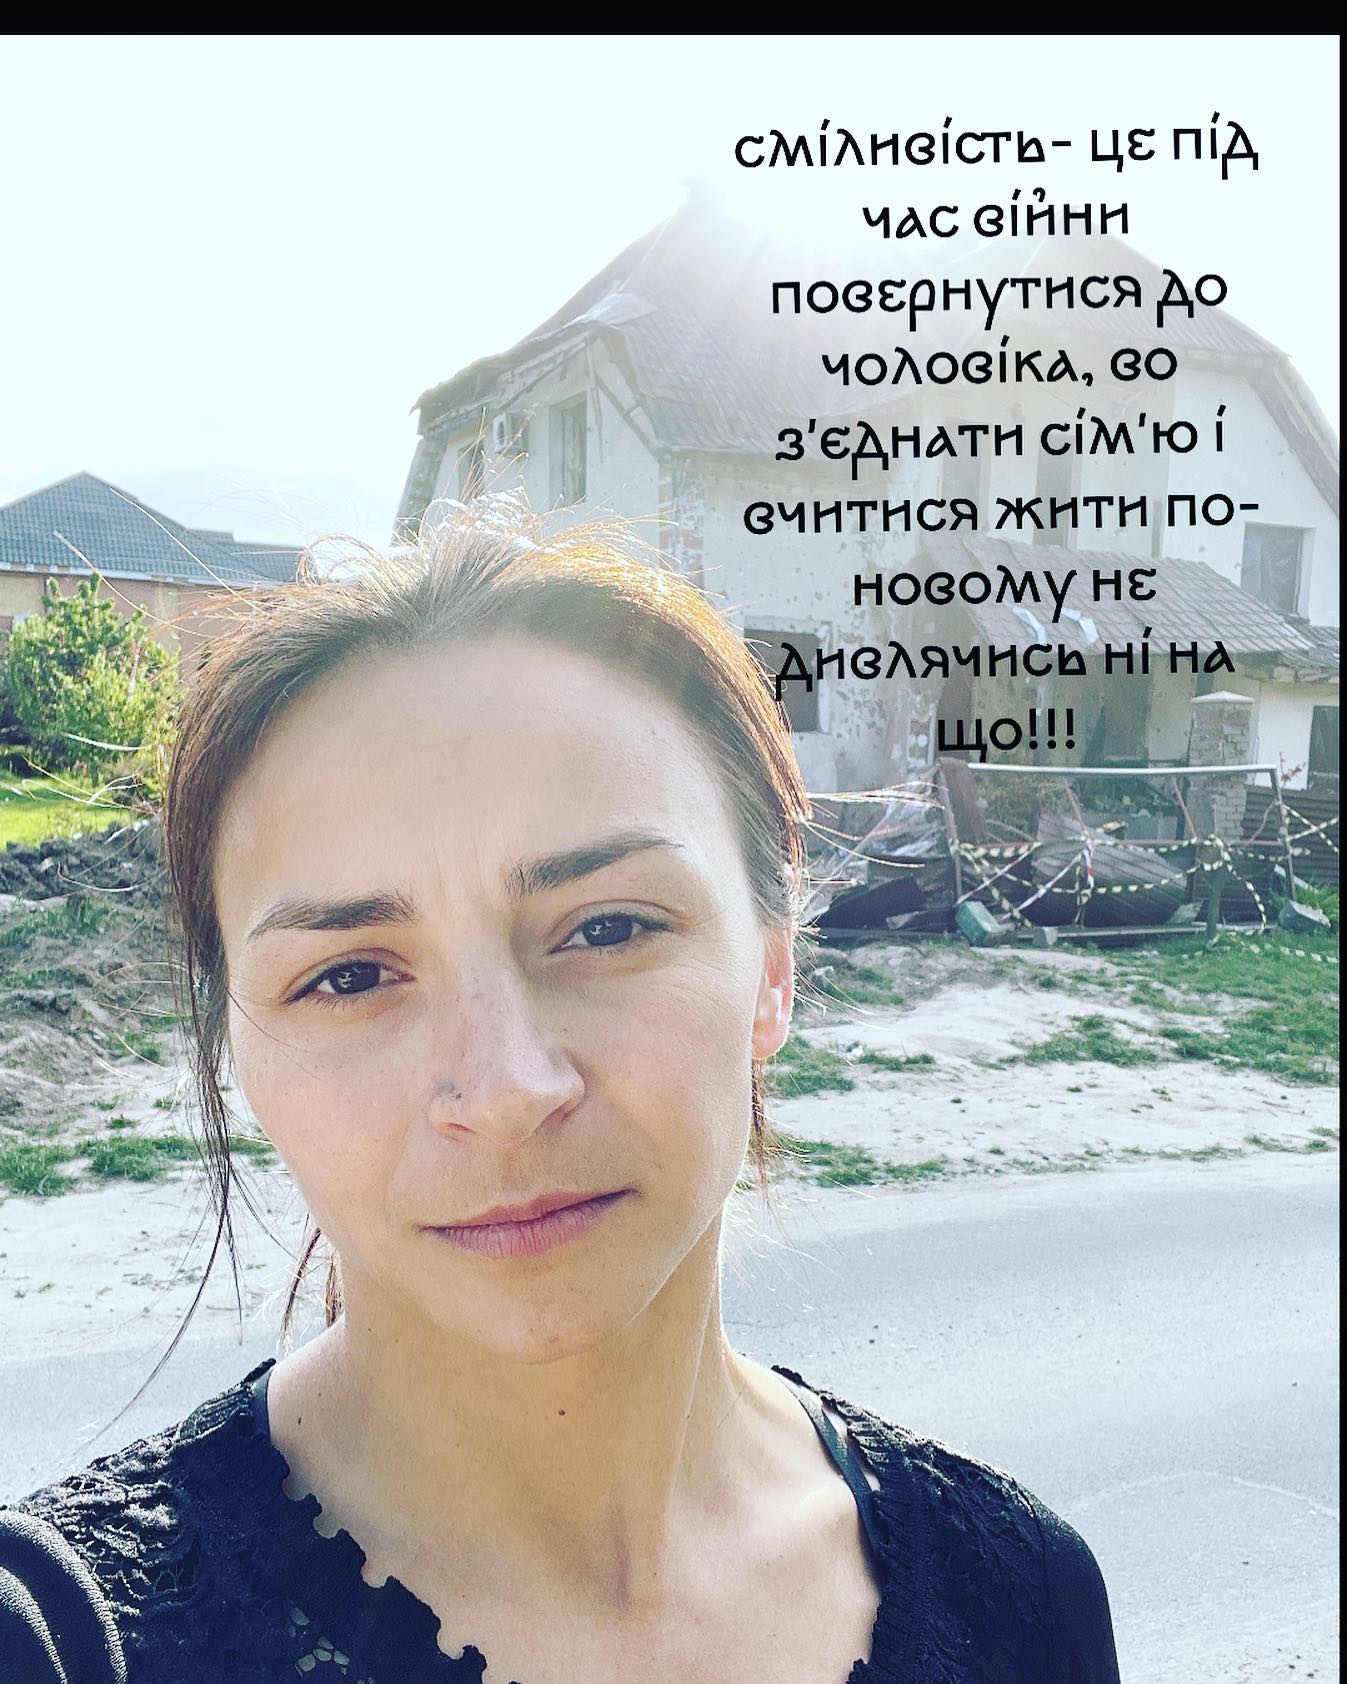 Ілона Гвоздьова повернулася до України та показала, що залишилося від її будинку під Києвом